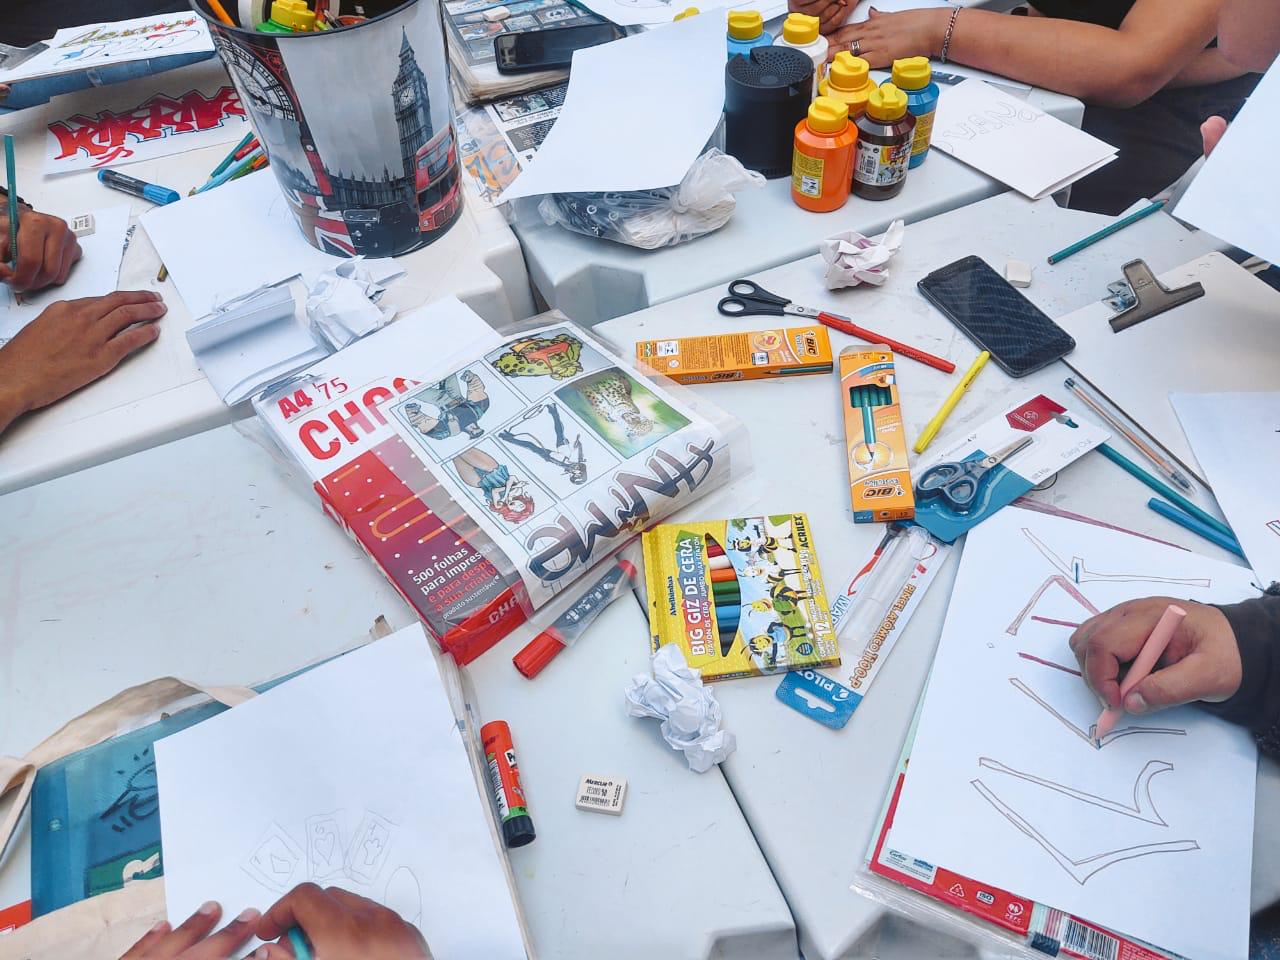 foto da mesa com materiais dispostos enquanto as mãos de quatro jovens aparecem desenhando nos quatro cantos da imagem